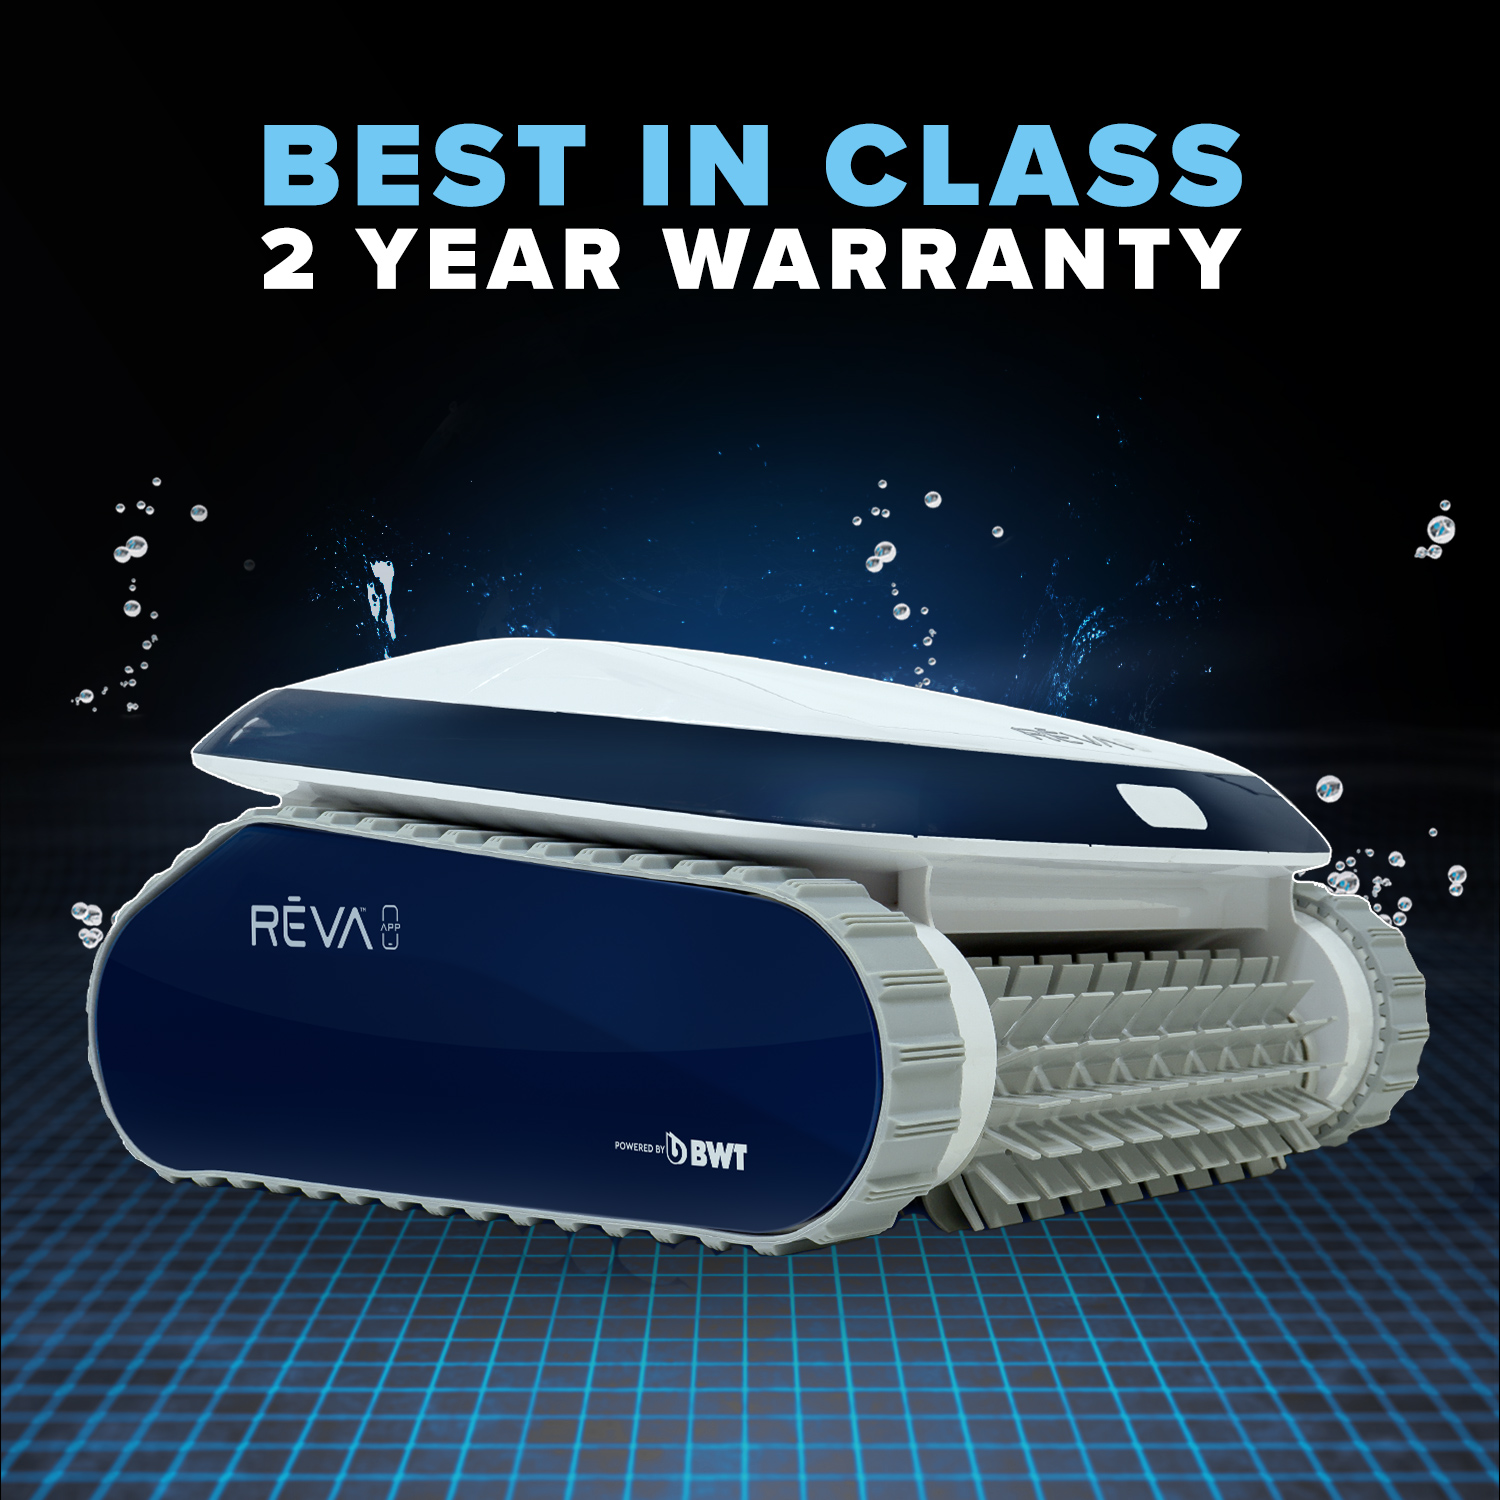 Aquabot REVA 2 Year Warranty